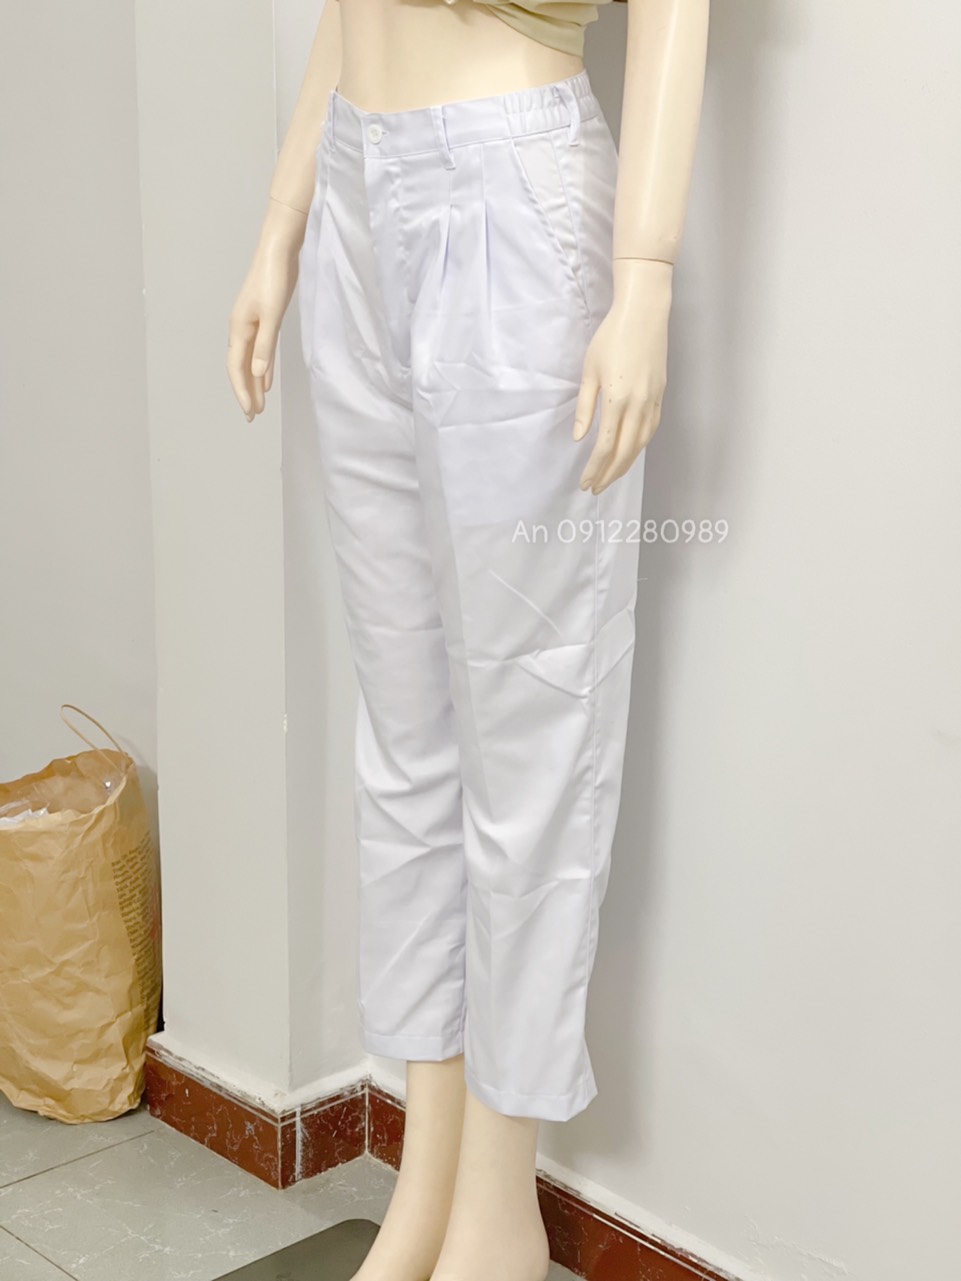 Quần blouse trắng đủ size từ XS đến 6XL - quần y tế cho nam và nữ - quần tây trắng cao cấp vải kaki